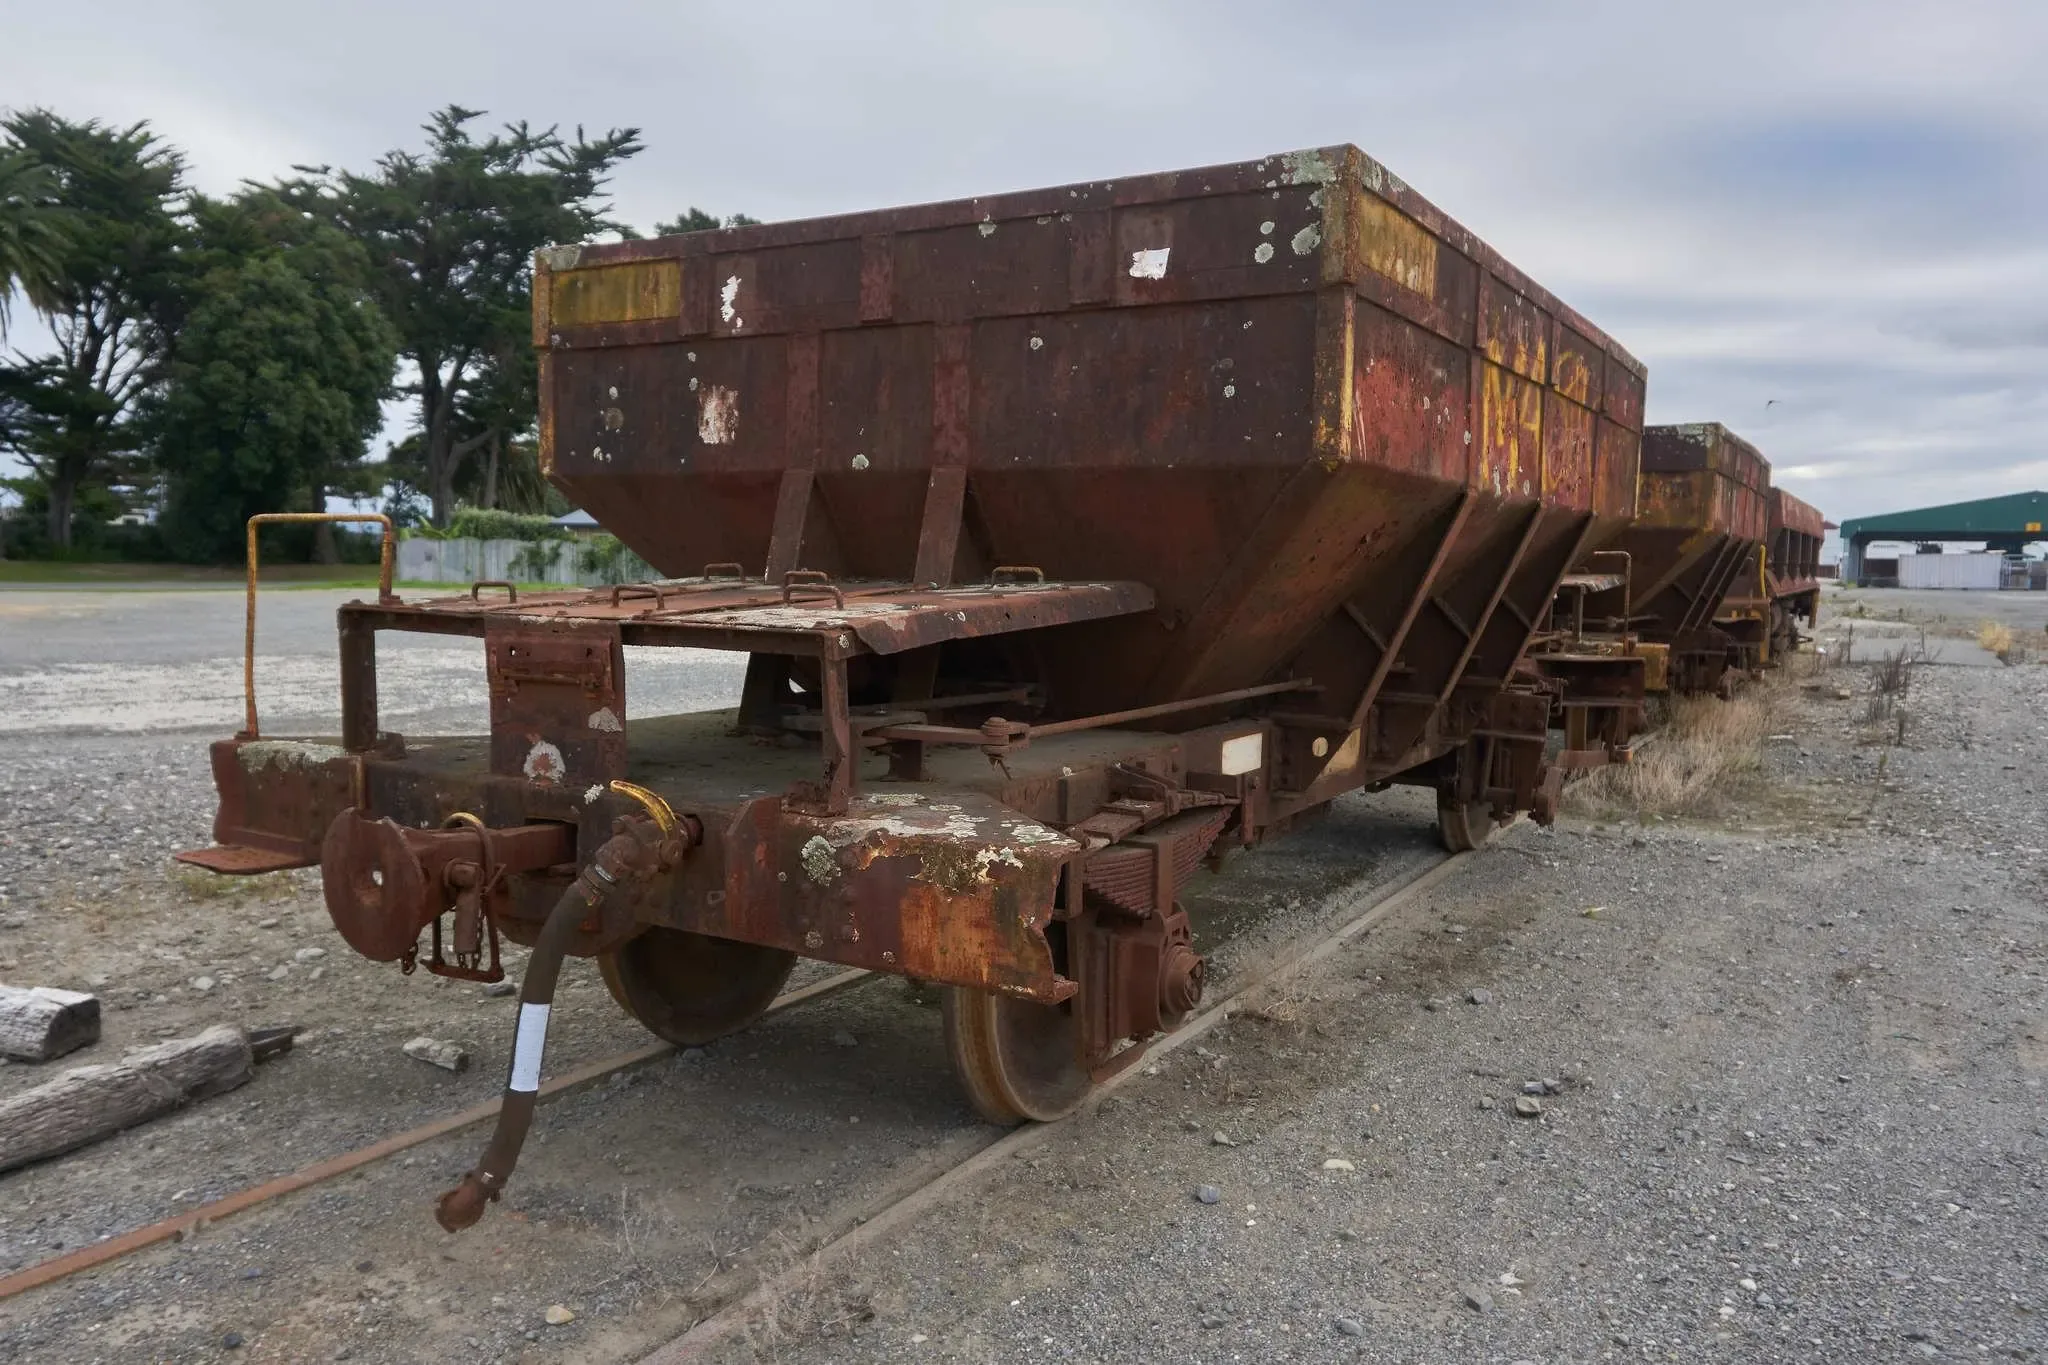 78 photos of Rusty Cargo Rail Cars